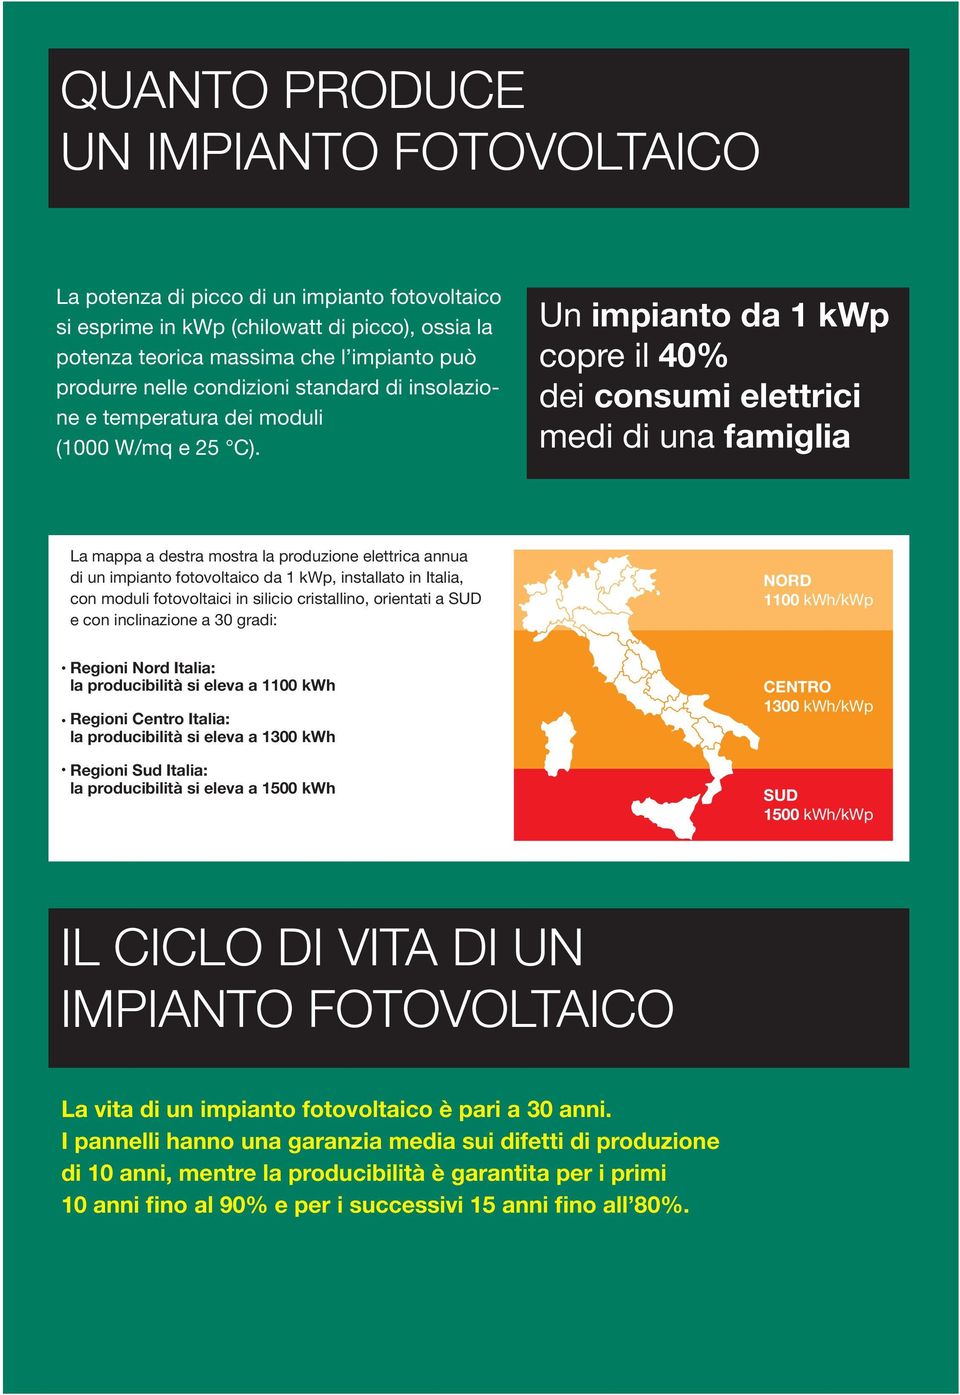 Un impianto da 1 kwp copre il 40% dei consumi elettrici medi di una famiglia La mappa a destra mostra la produzione elettrica annua di un impianto fotovoltaico da 1 kwp, installato in Italia, con